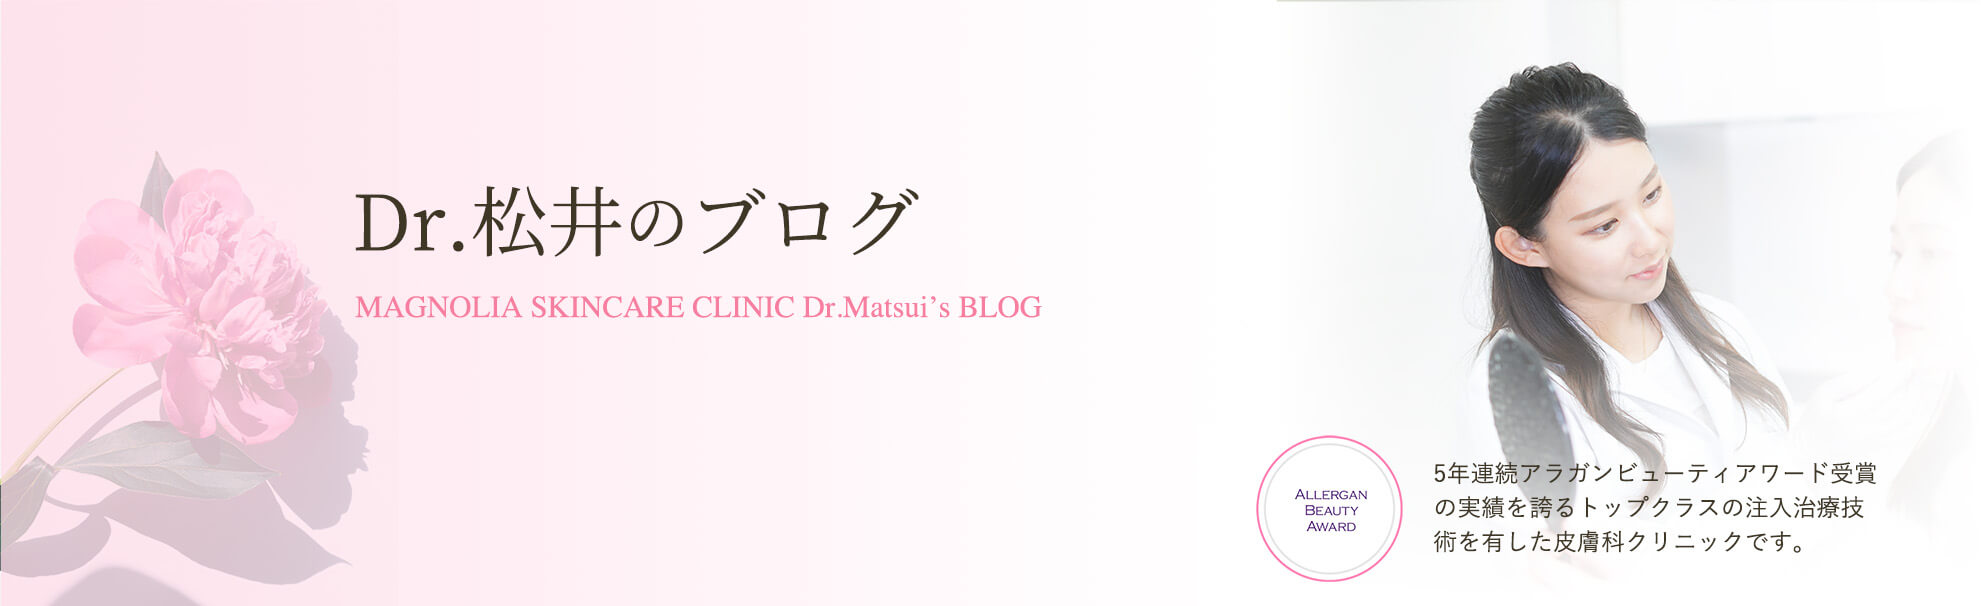 Dr.松井のブログキービジュアル